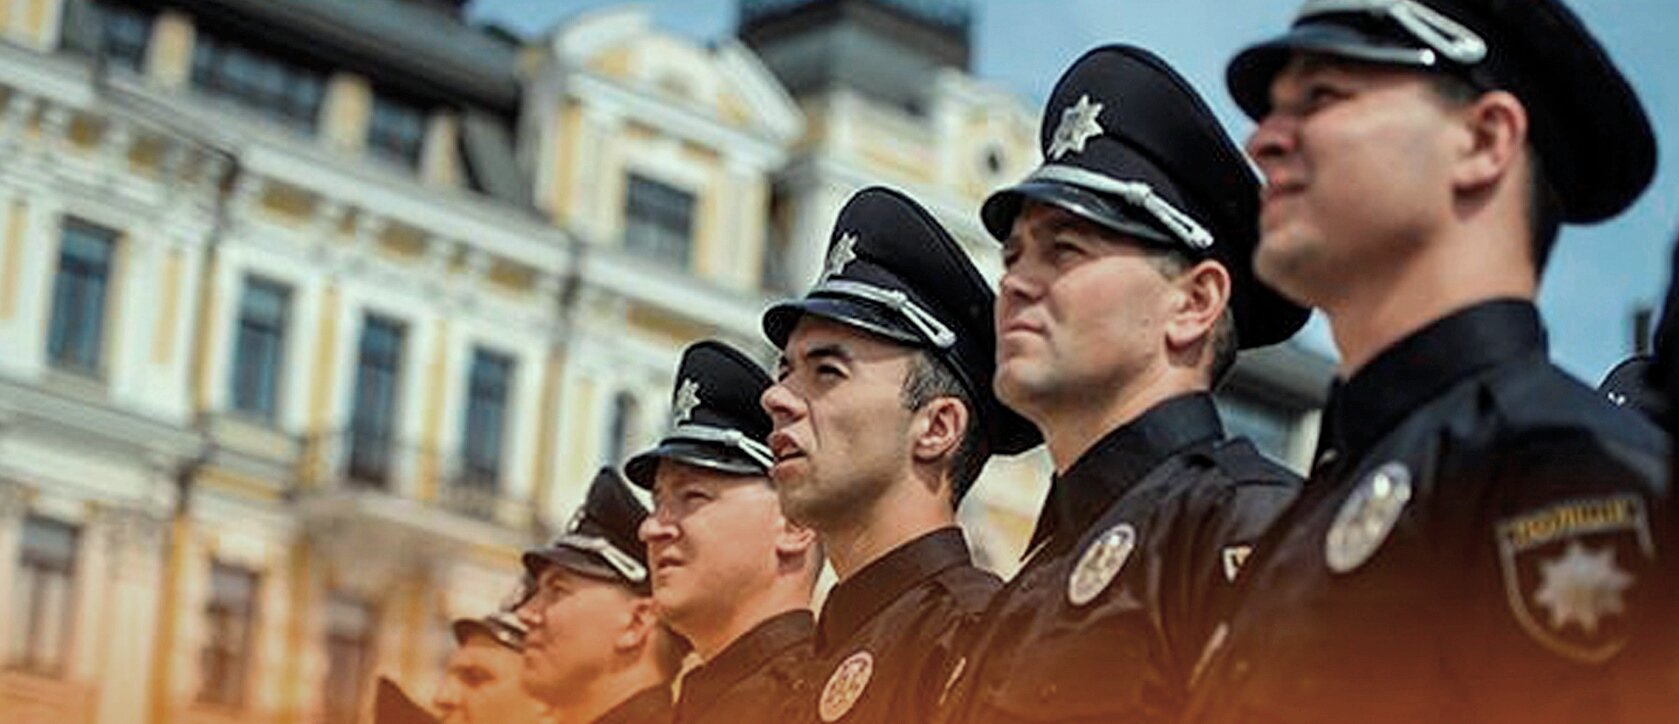 Наступного року на Черкащині запрацюють поліцейські офіцери громади (Відео)